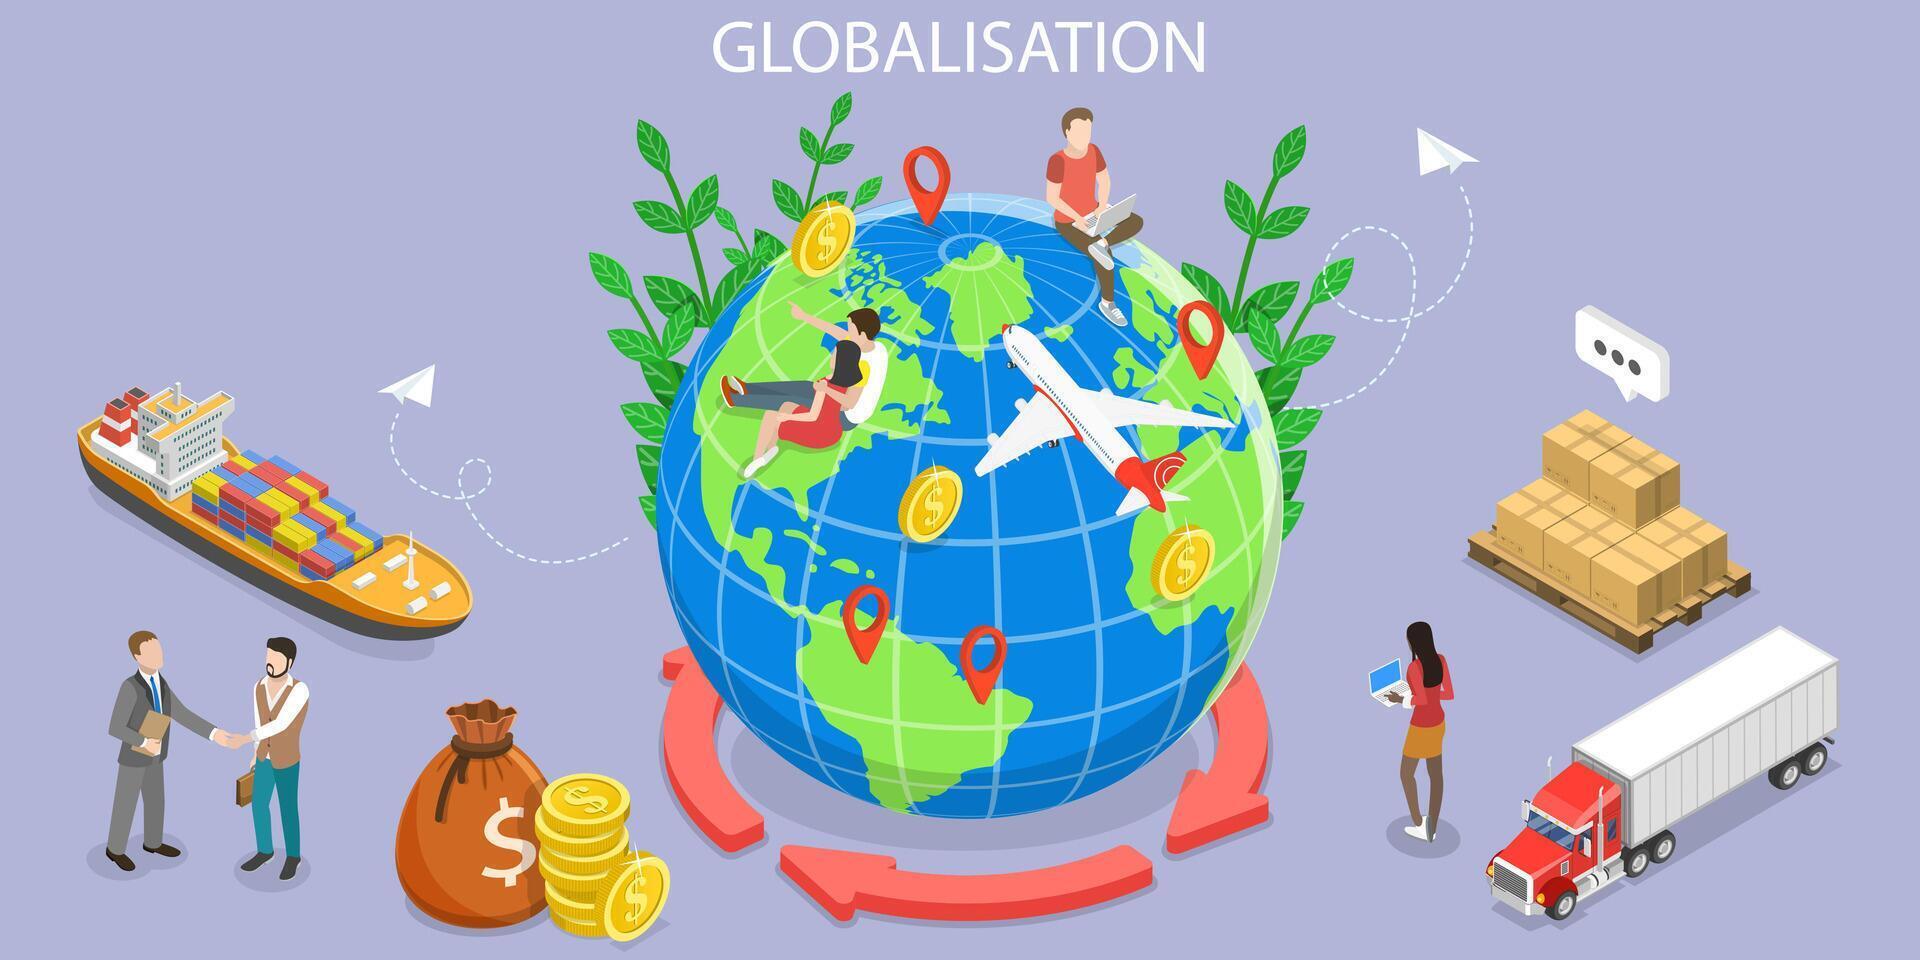 3d isométrico plano vetor conceptual ilustração do internacional troca, globalização